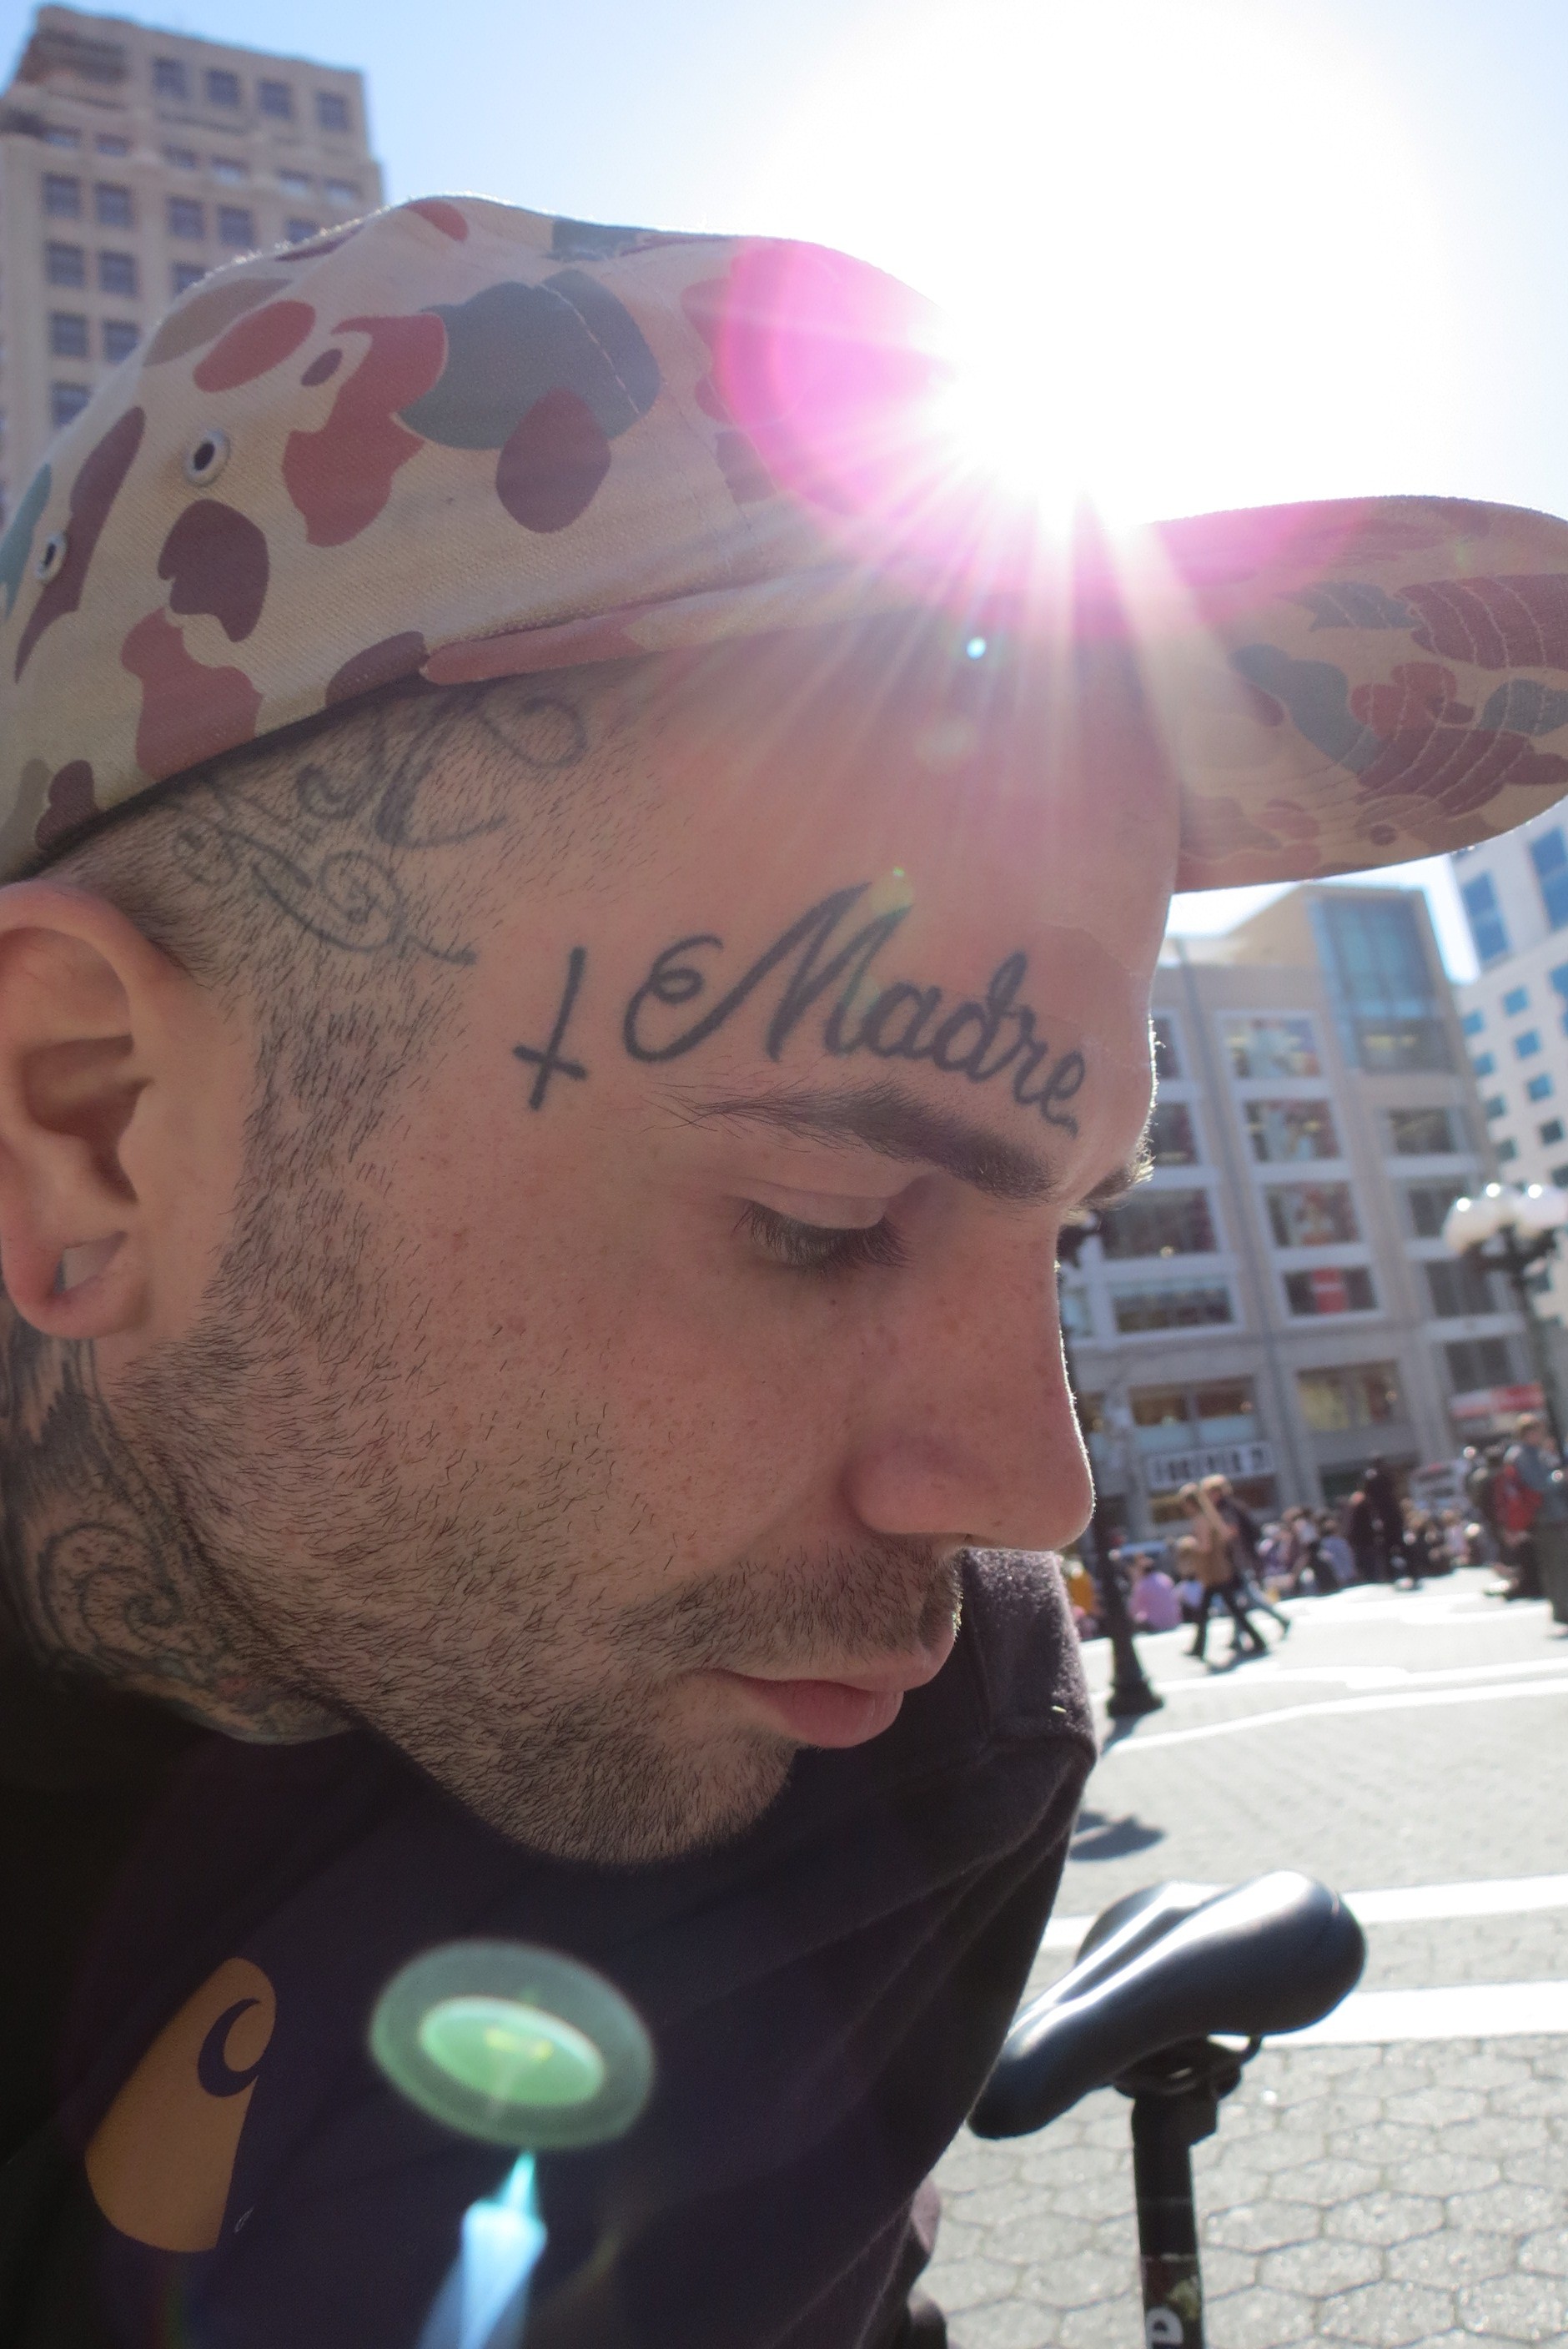 man with facial tattoos